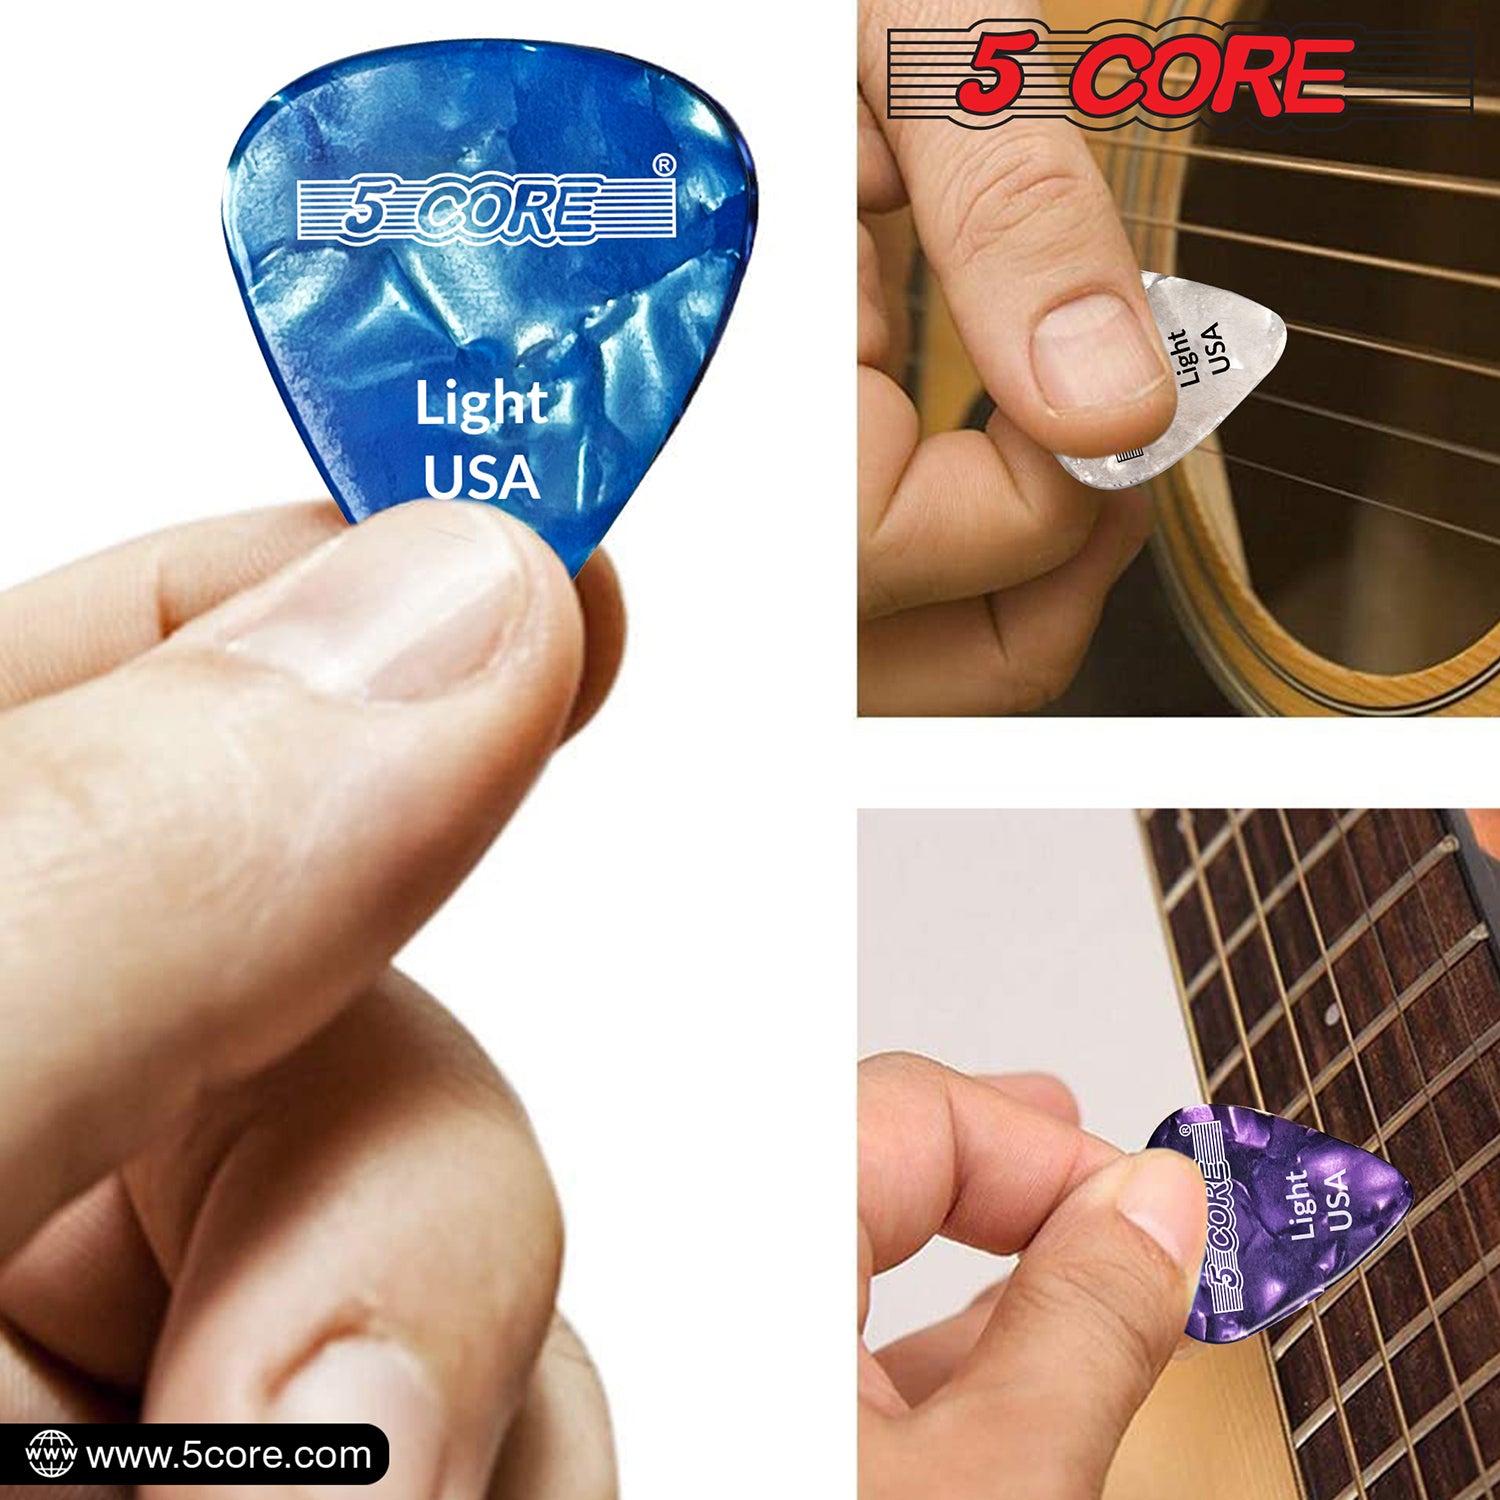 5 Core Celluloid Guitar Picks 12 Pack Blue Light Gauge Plectrums for Acoustic Electric Bass Guitar